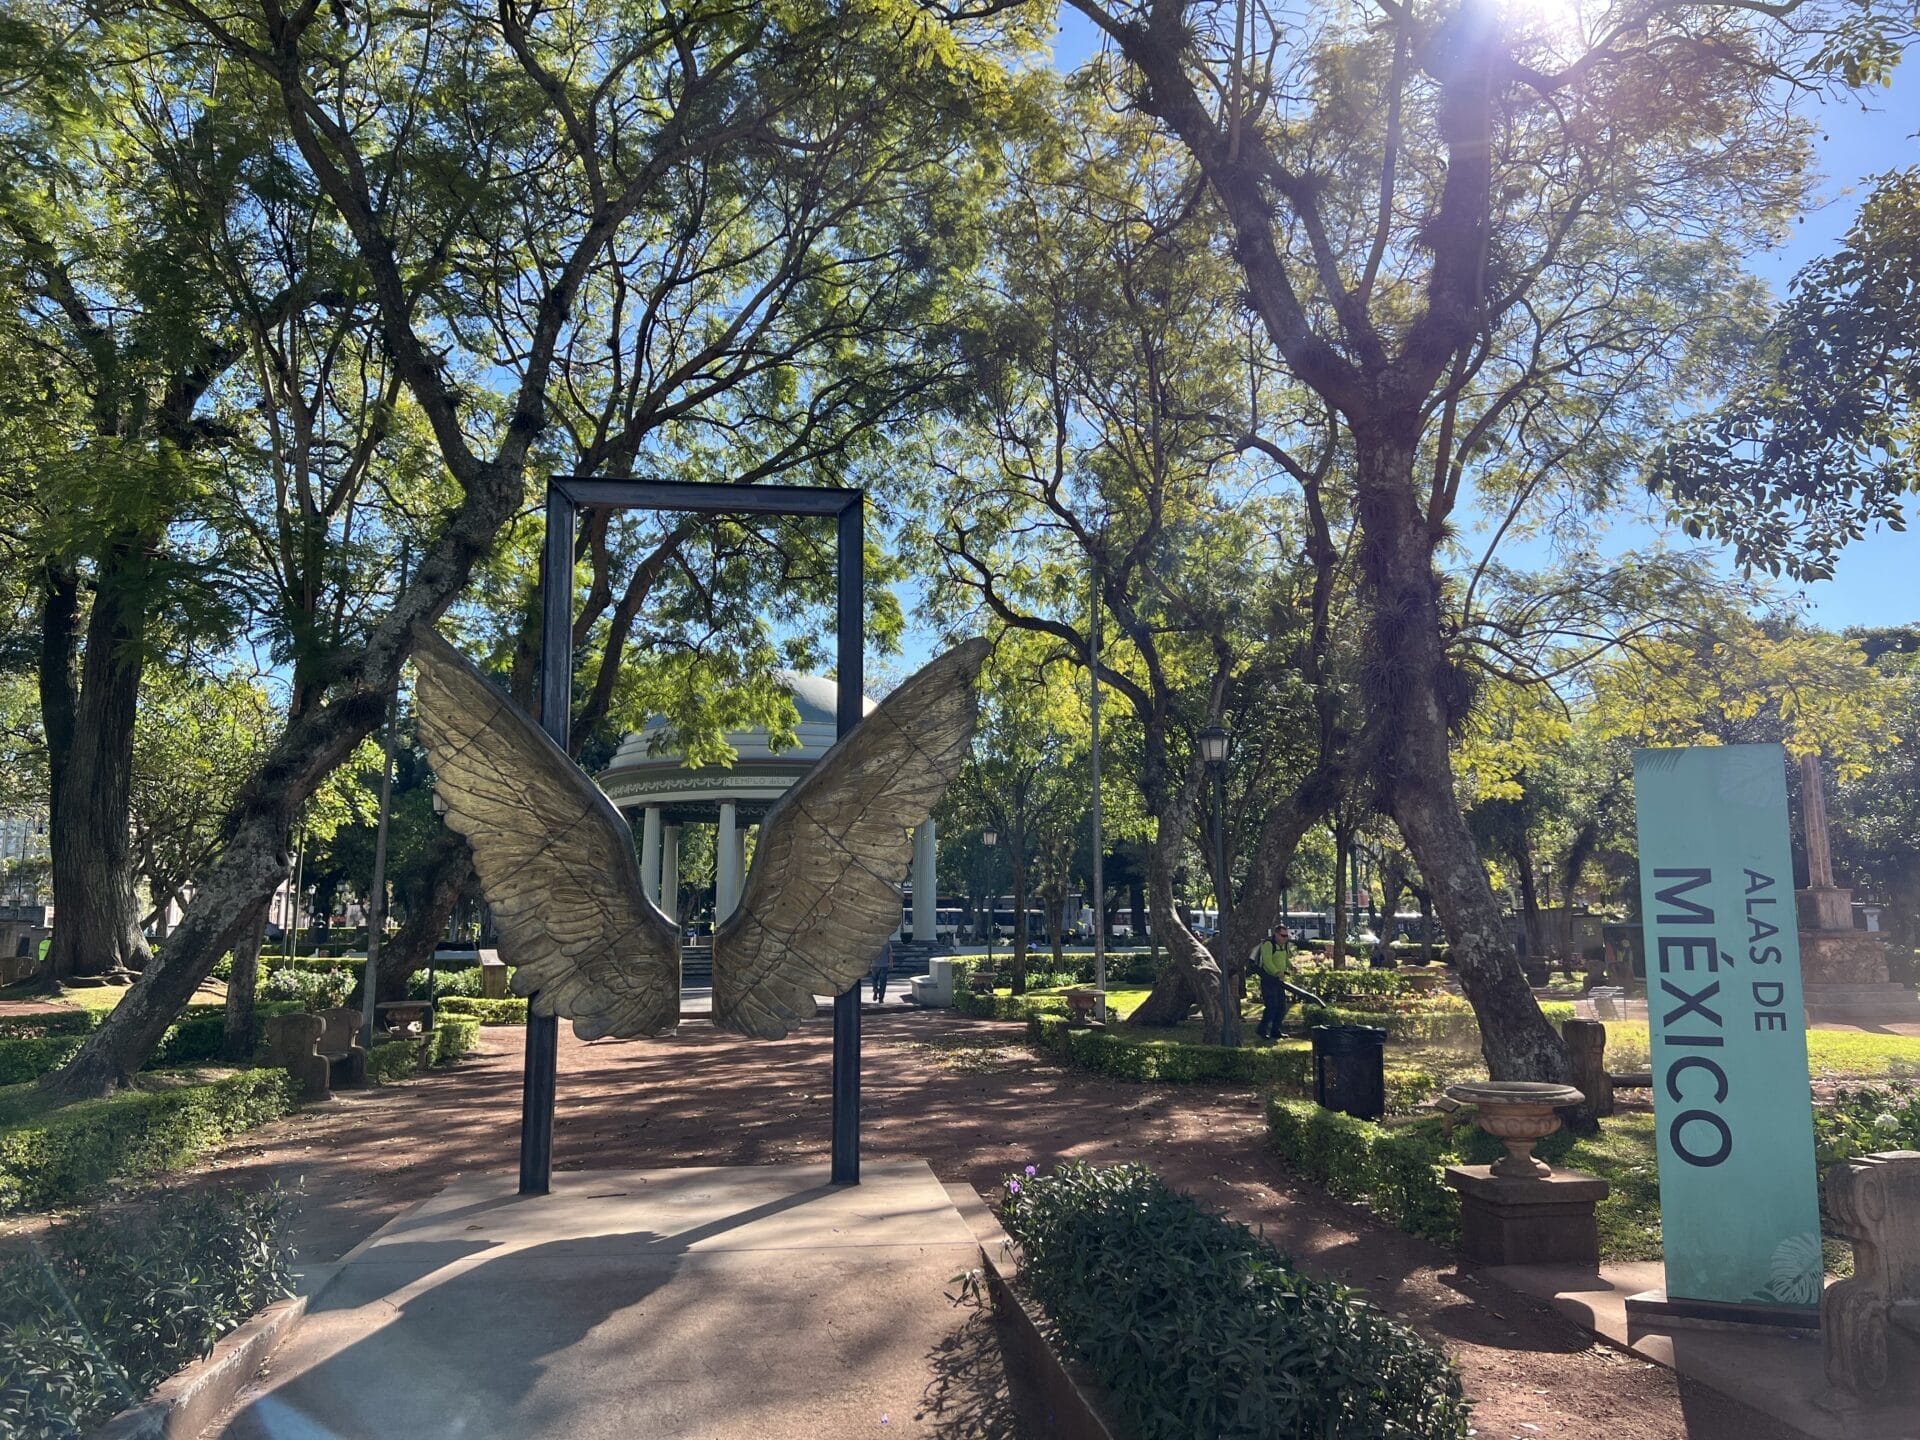 Skulptur aus goldenen Schmetterlingsflügeln am Eingang eines von Bäumen gesäumten Parkwegs, mit einem grünen „Museo“-Schild auf der rechten Seite.